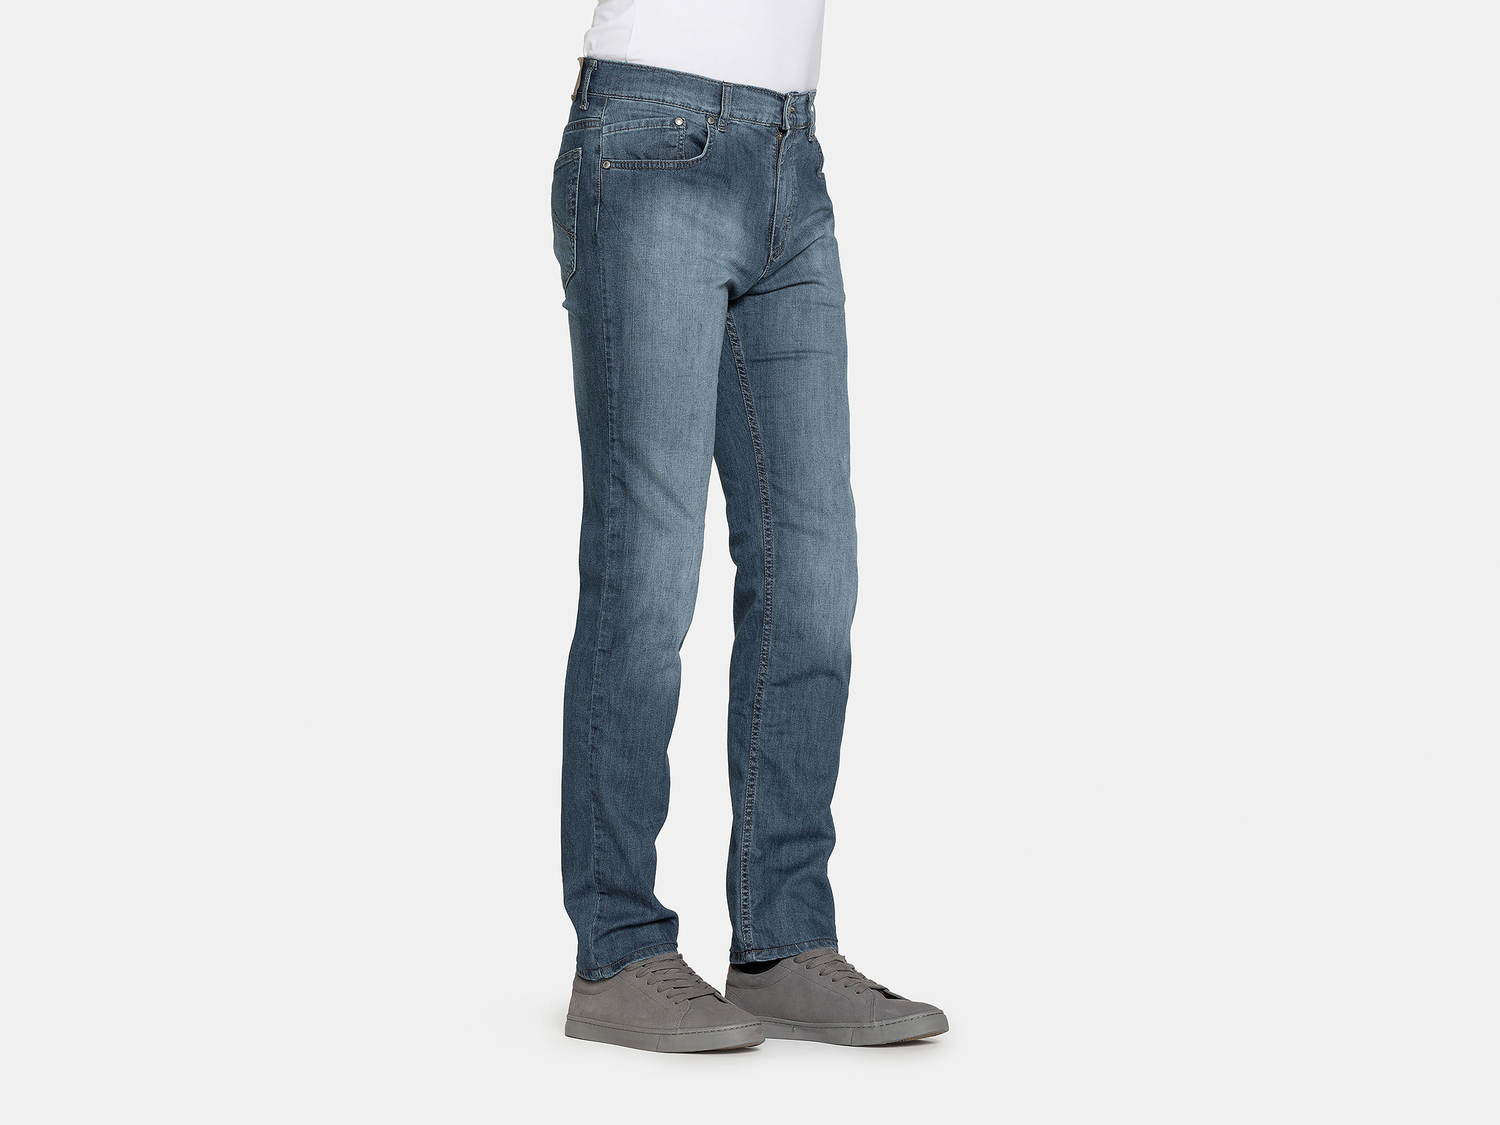 Jeans da uomo Carrera, prezzo 29.99 &#8364; 
Misure: 46-56 
- Modello 700-941A
Taglie ...